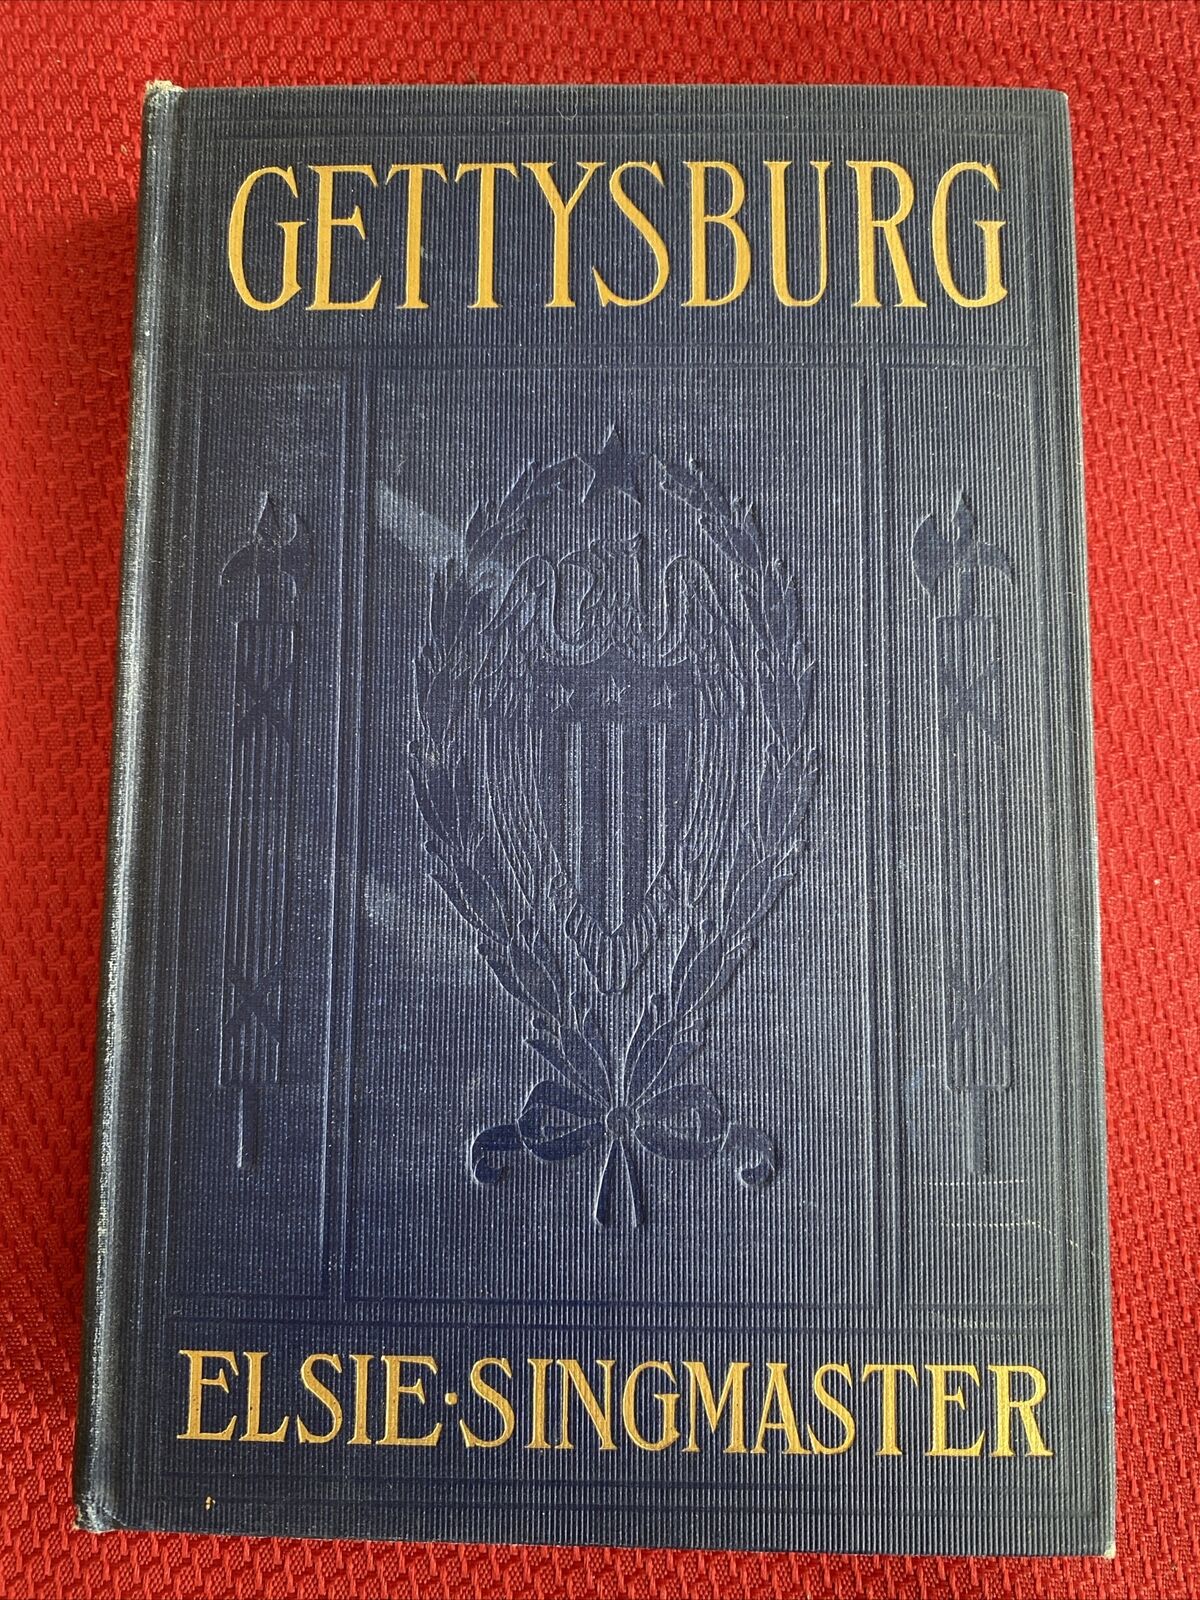 “Gettysburg” By Elsie Singmaster 1913 Edition